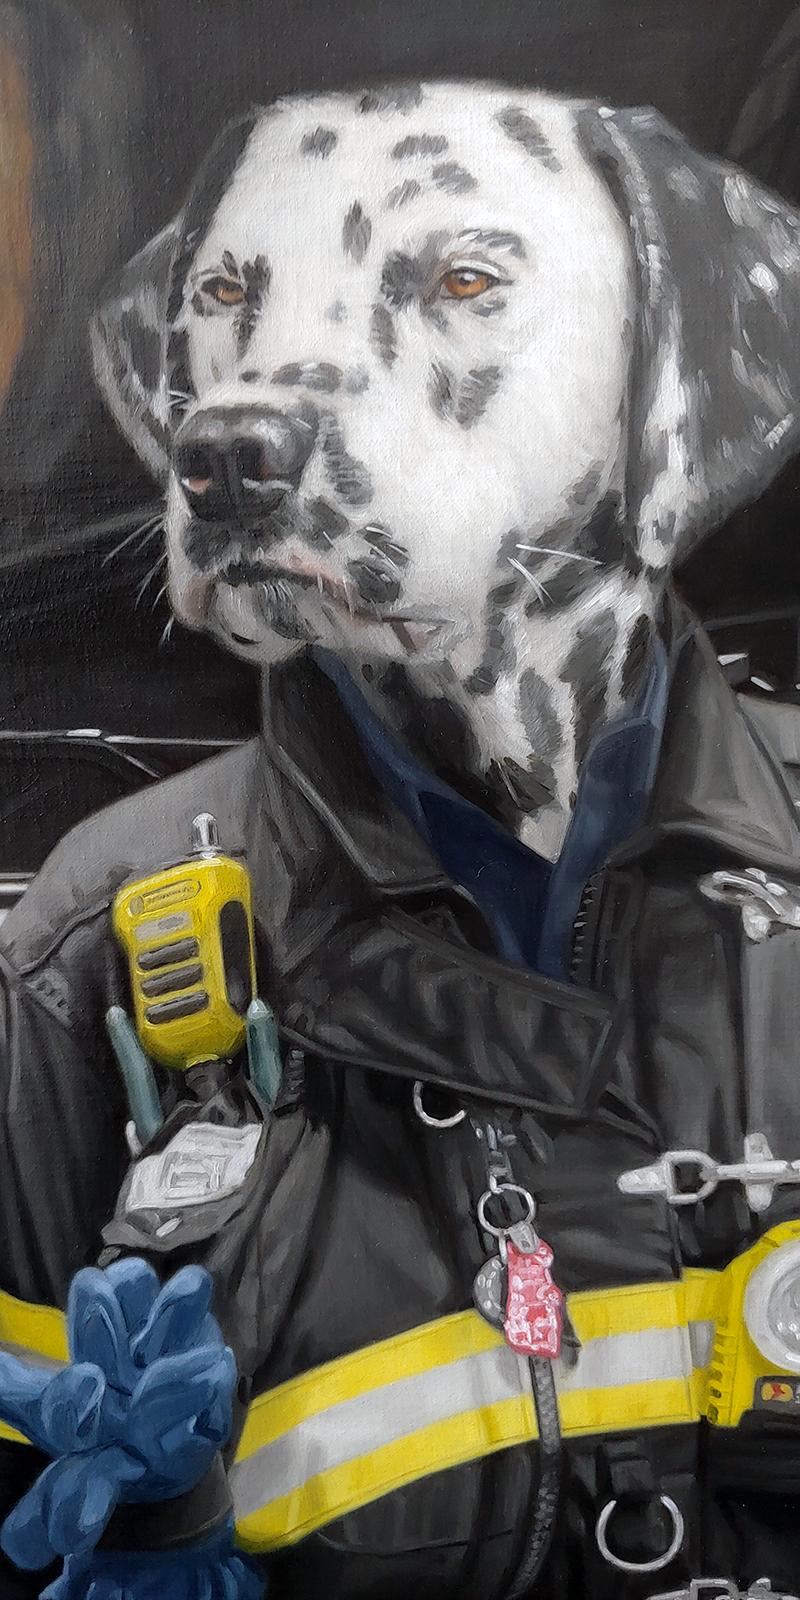 « Angleterre 101 » Dalmatian NYFD Super réalisme Huile sur toile, peinture fantaisie 2020 - Painting de Matthew Grabelsky